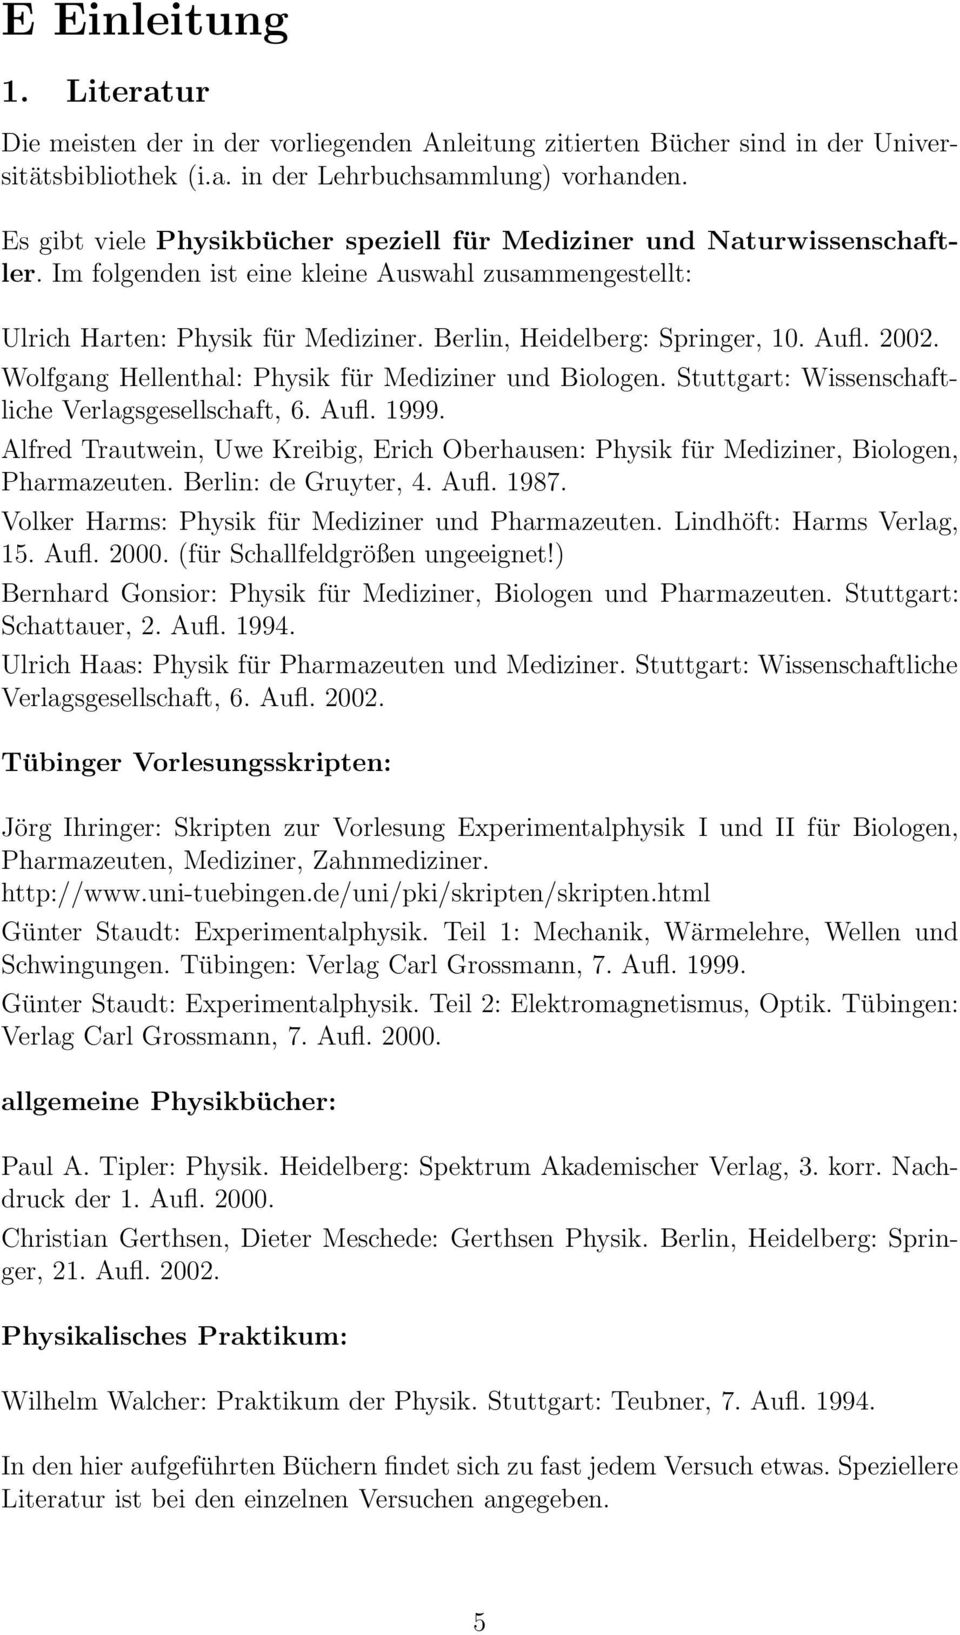 Berlin, Heidelberg: Springer, 10. Aufl. 2002. Wolfgang Hellenthal: Physik für Mediziner und Biologen. Stuttgart: Wissenschaftliche Verlagsgesellschaft, 6. Aufl. 1999.